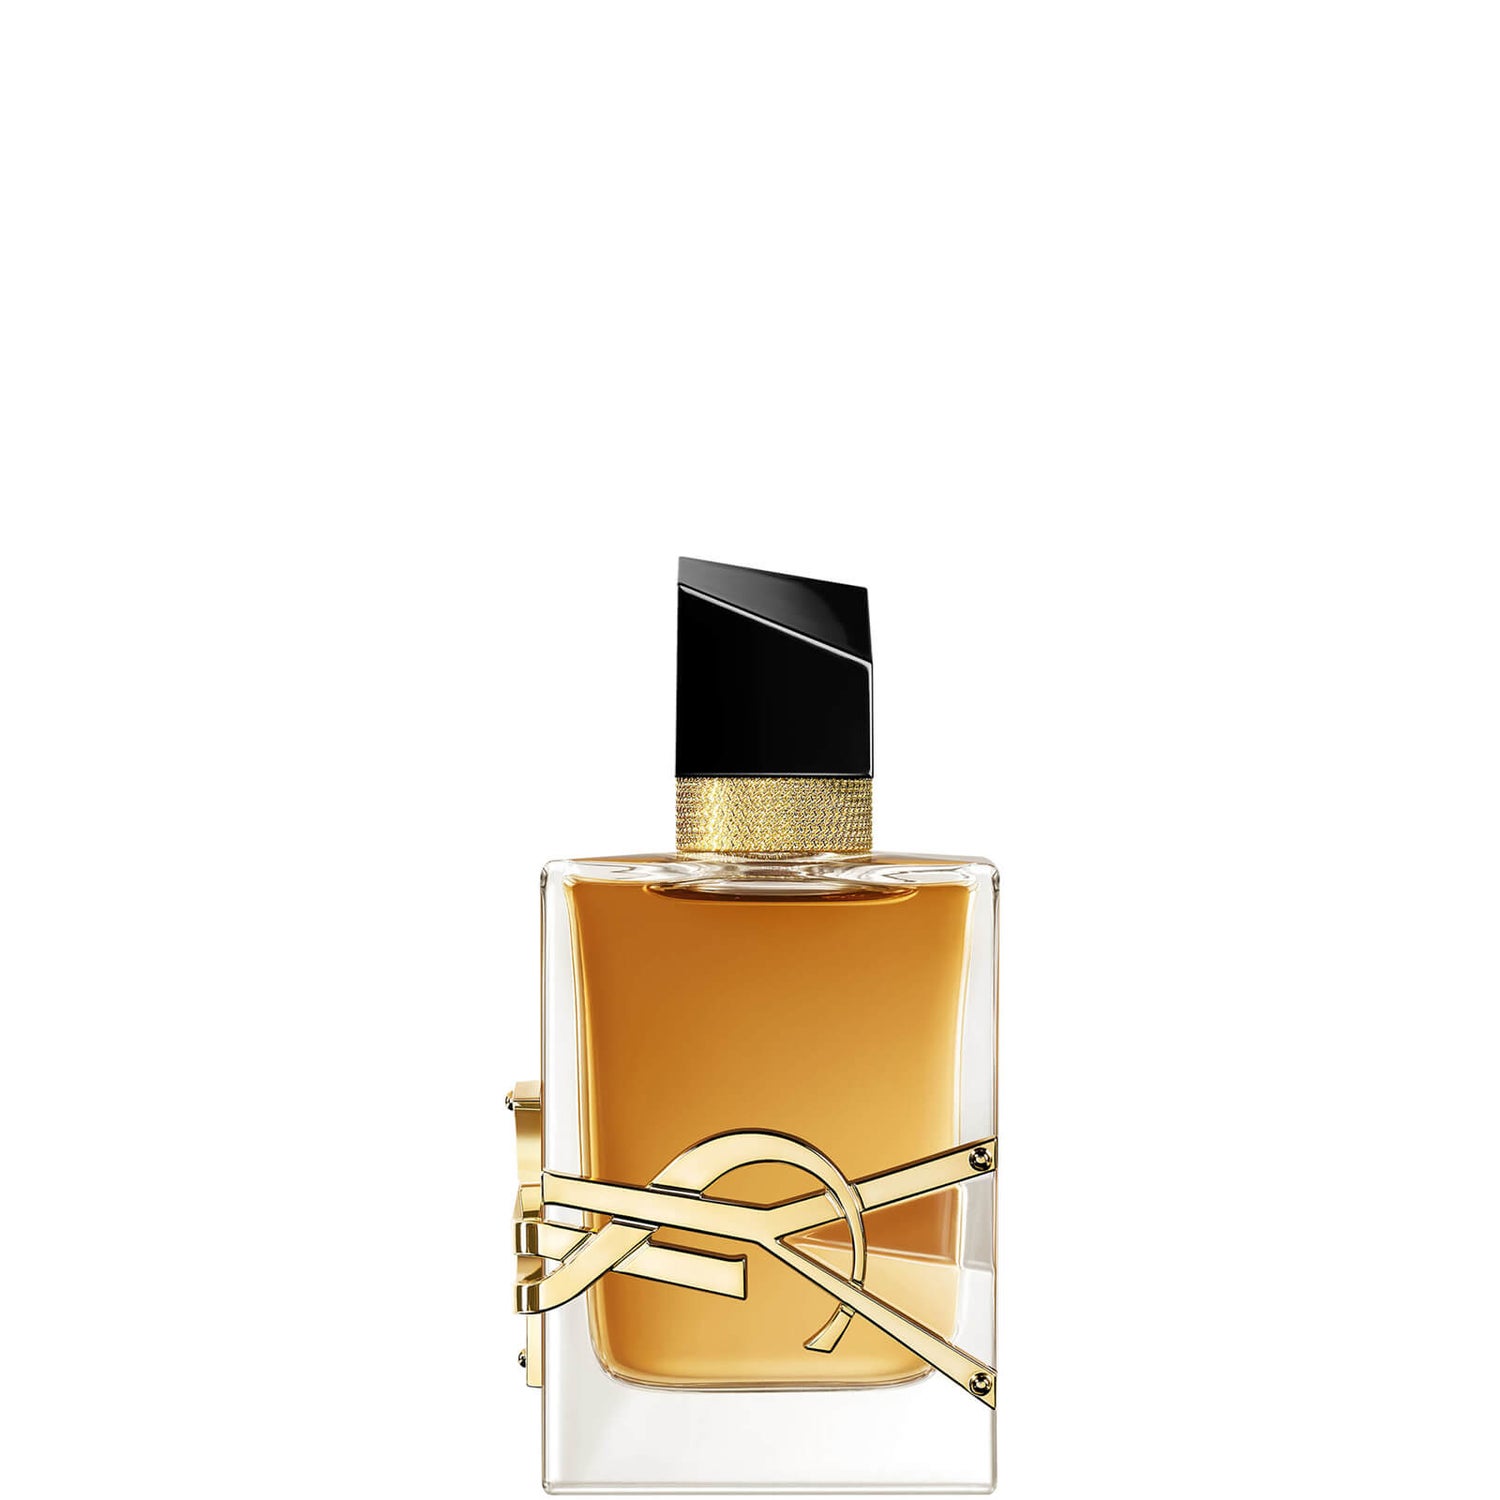 Eau de Parfum Libre Intense Yves Saint Laurent 50ml